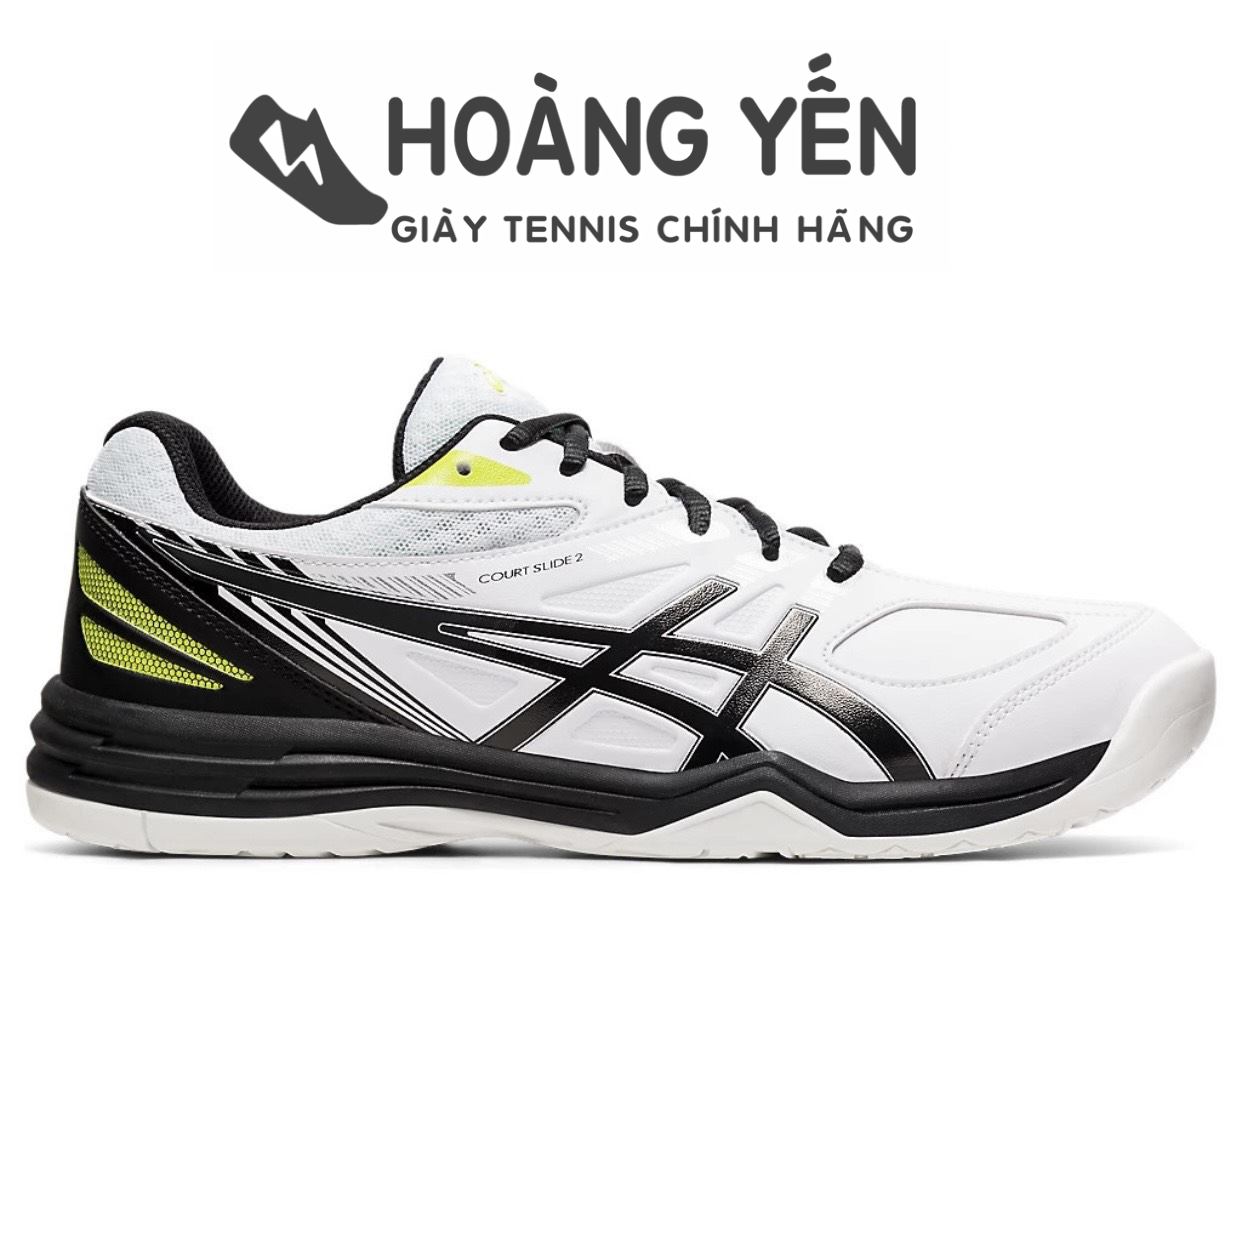 Giày Tennis Asics Court Slide 2 Chính Hãng